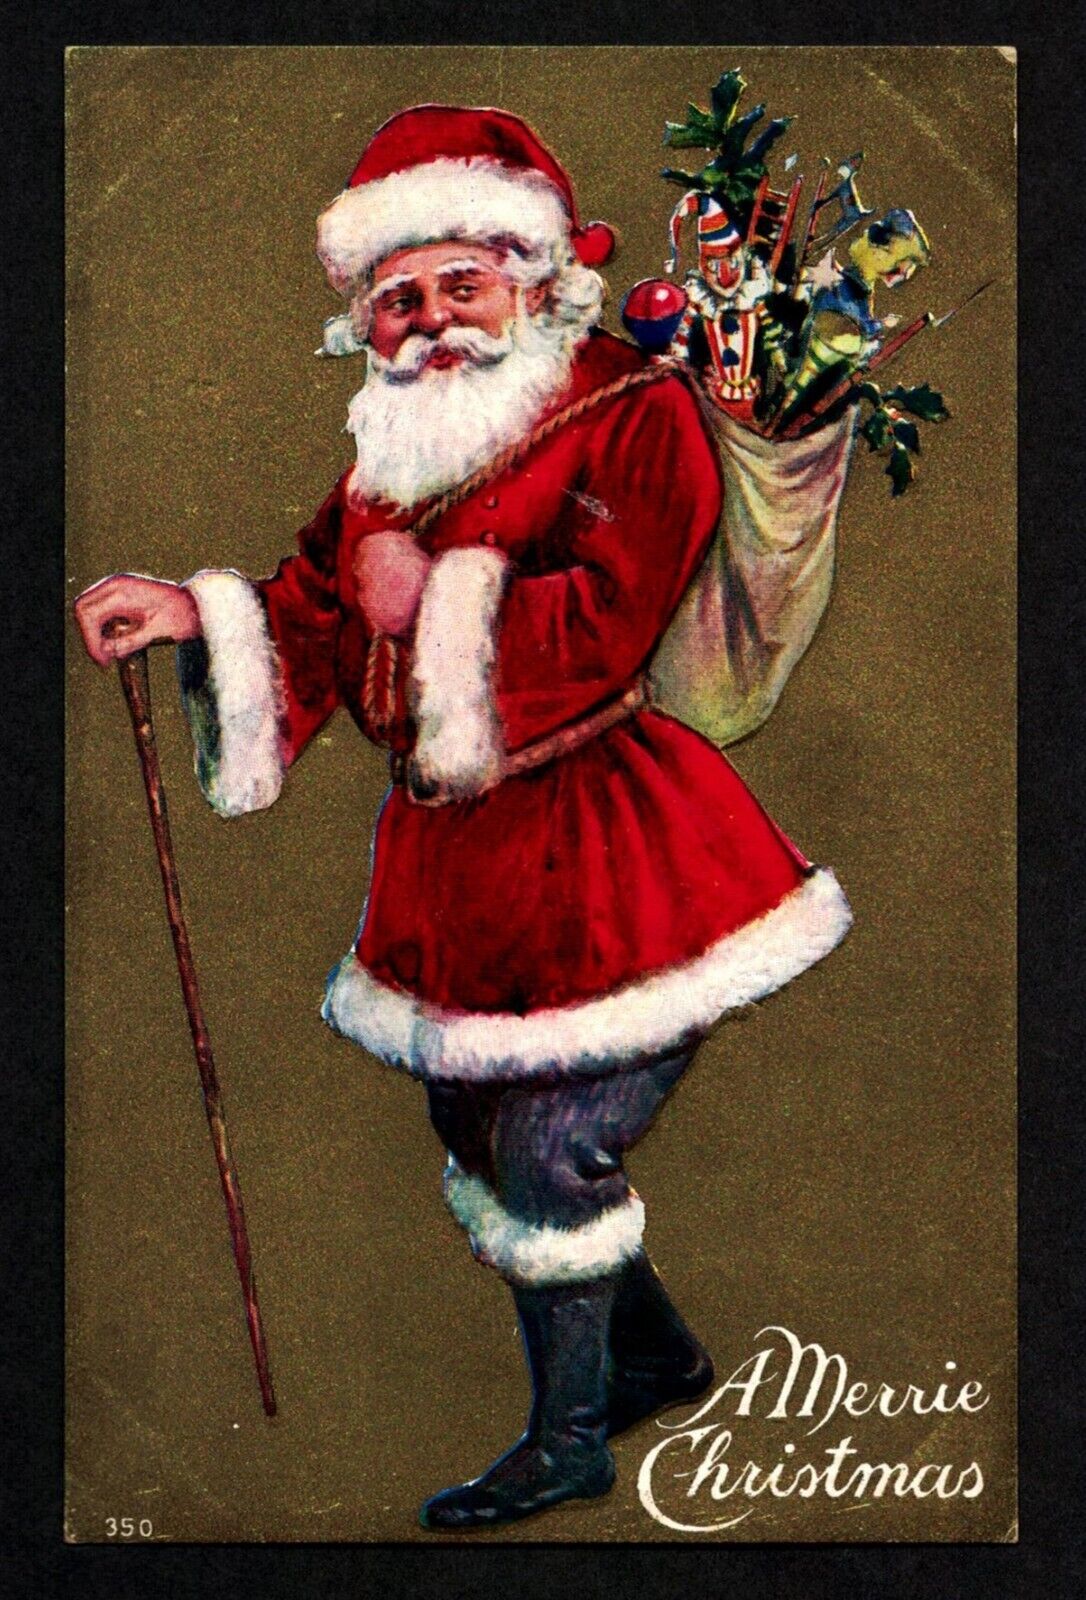 5004 Antique Vintage Postcard A MERRIE CHRISTMAS Santa Claus Cane Bag Toys Gold